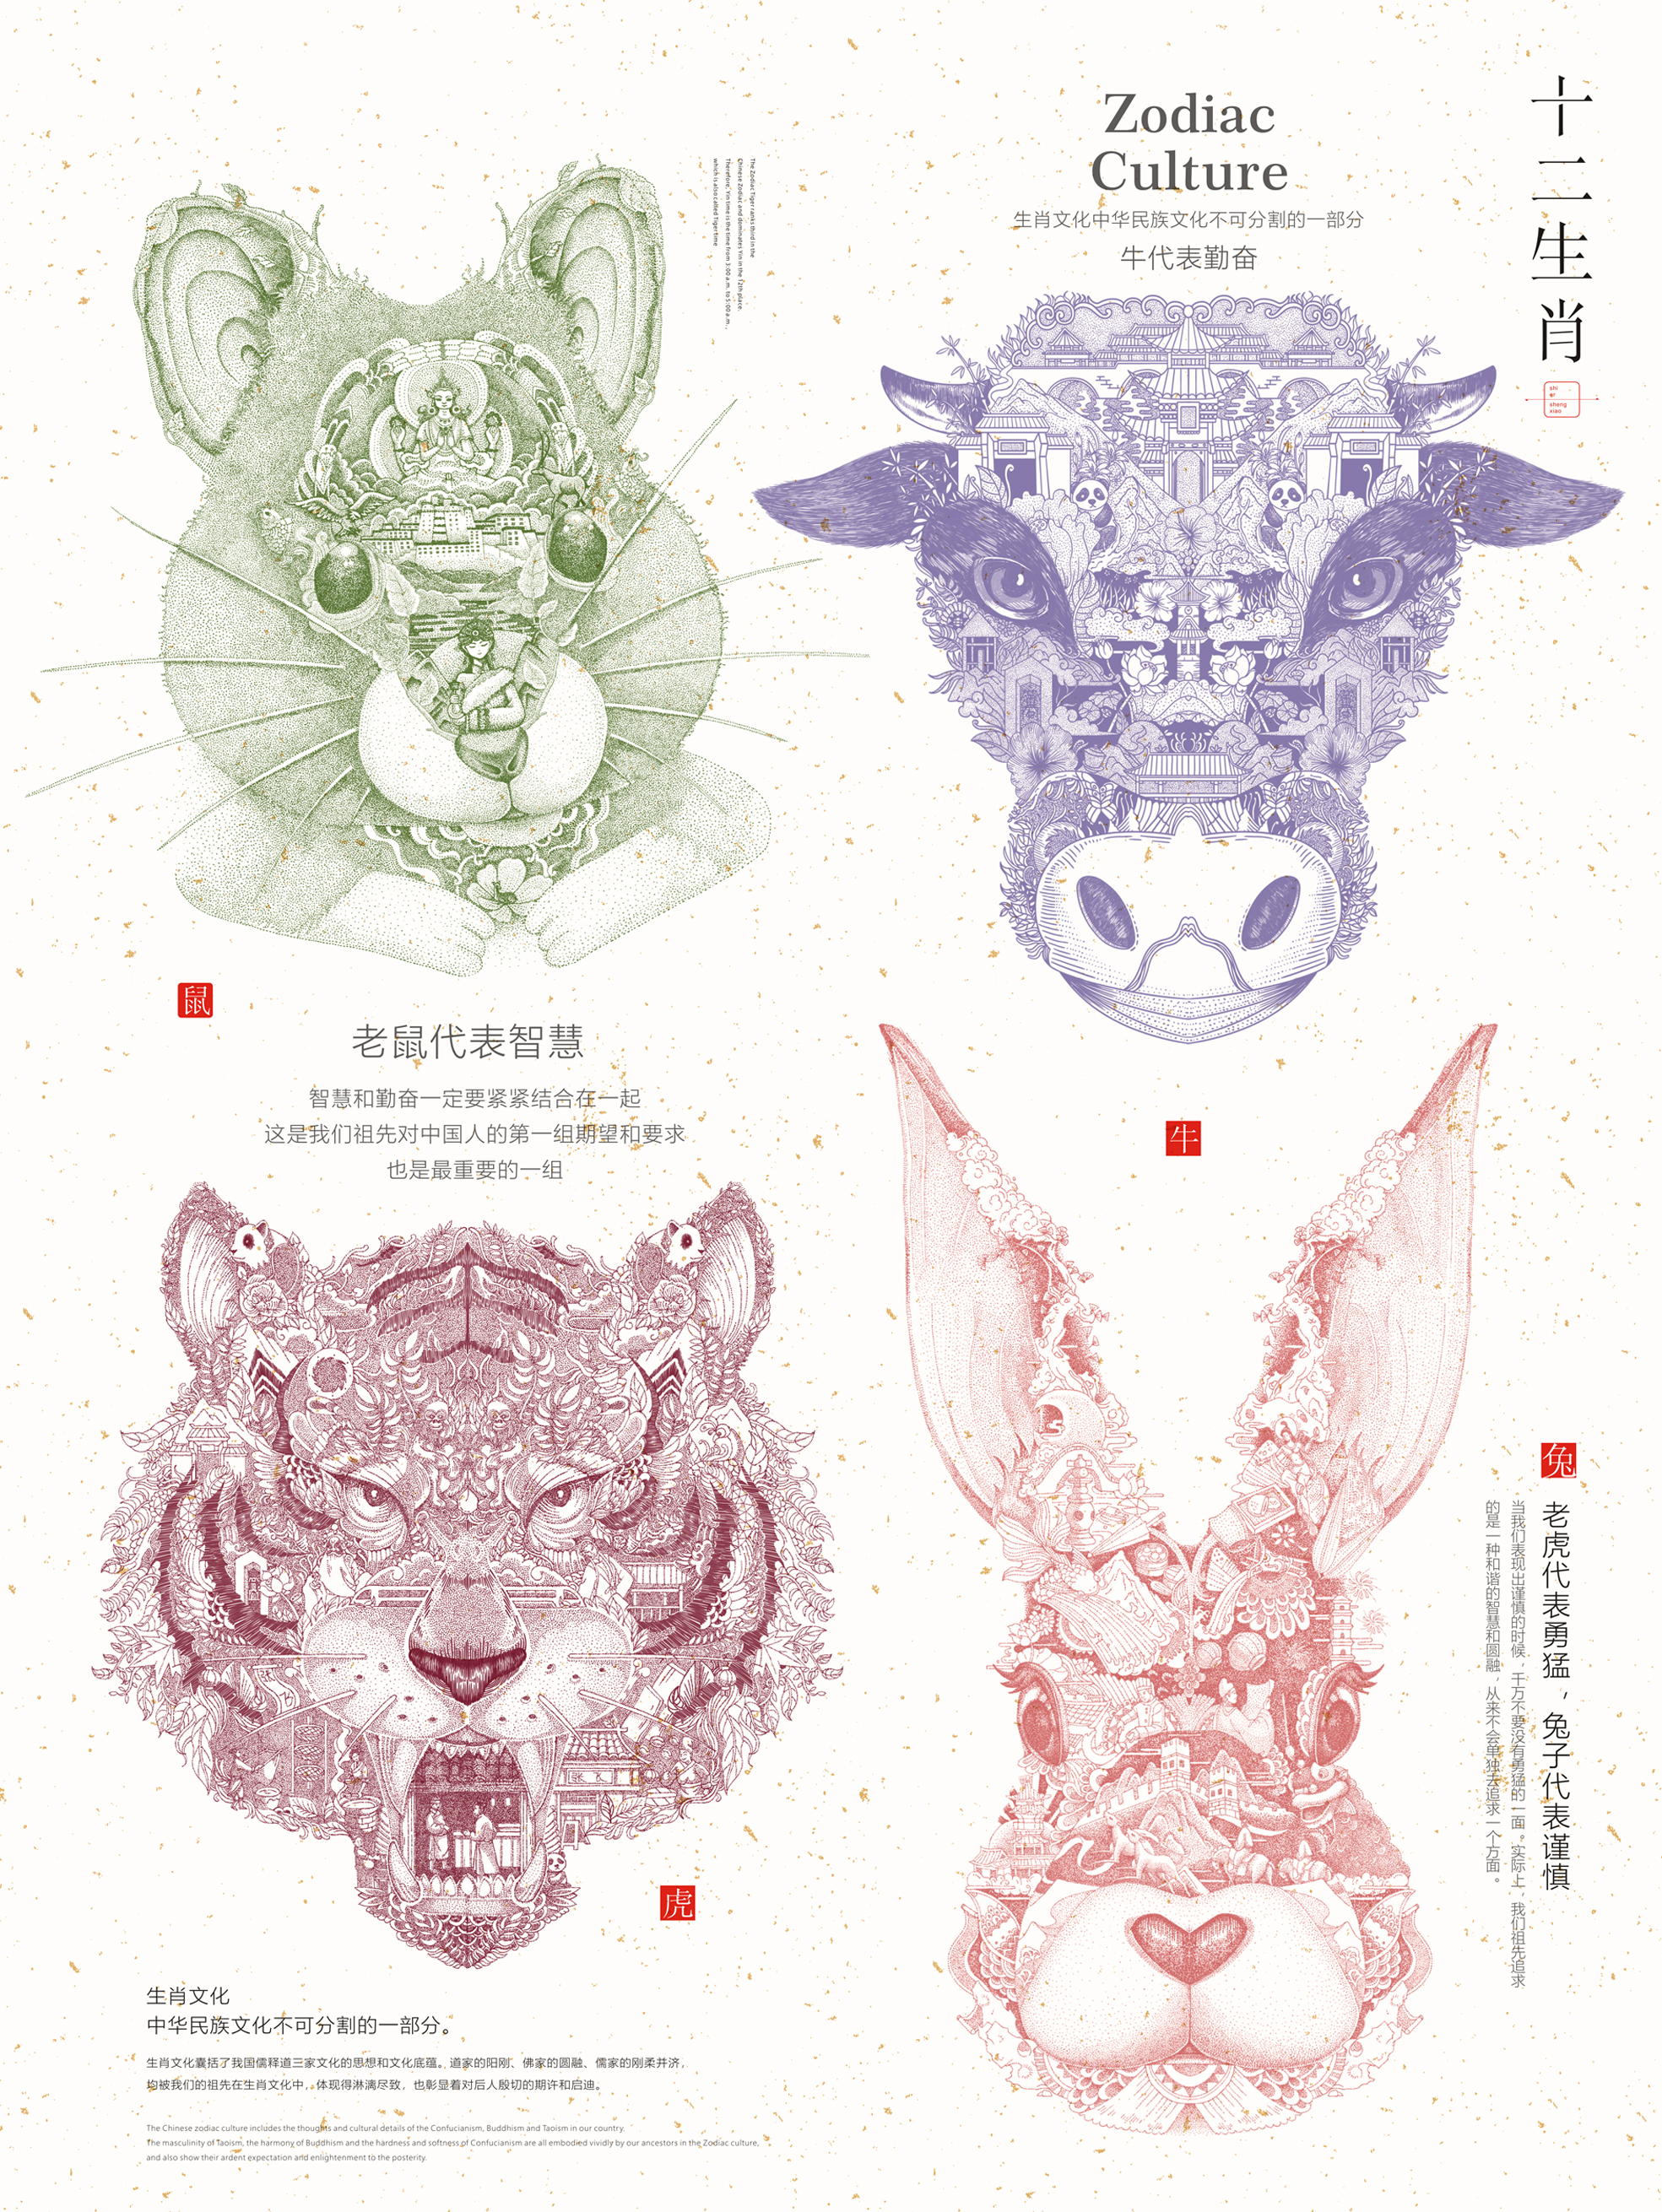 Chinese Zodiac culture